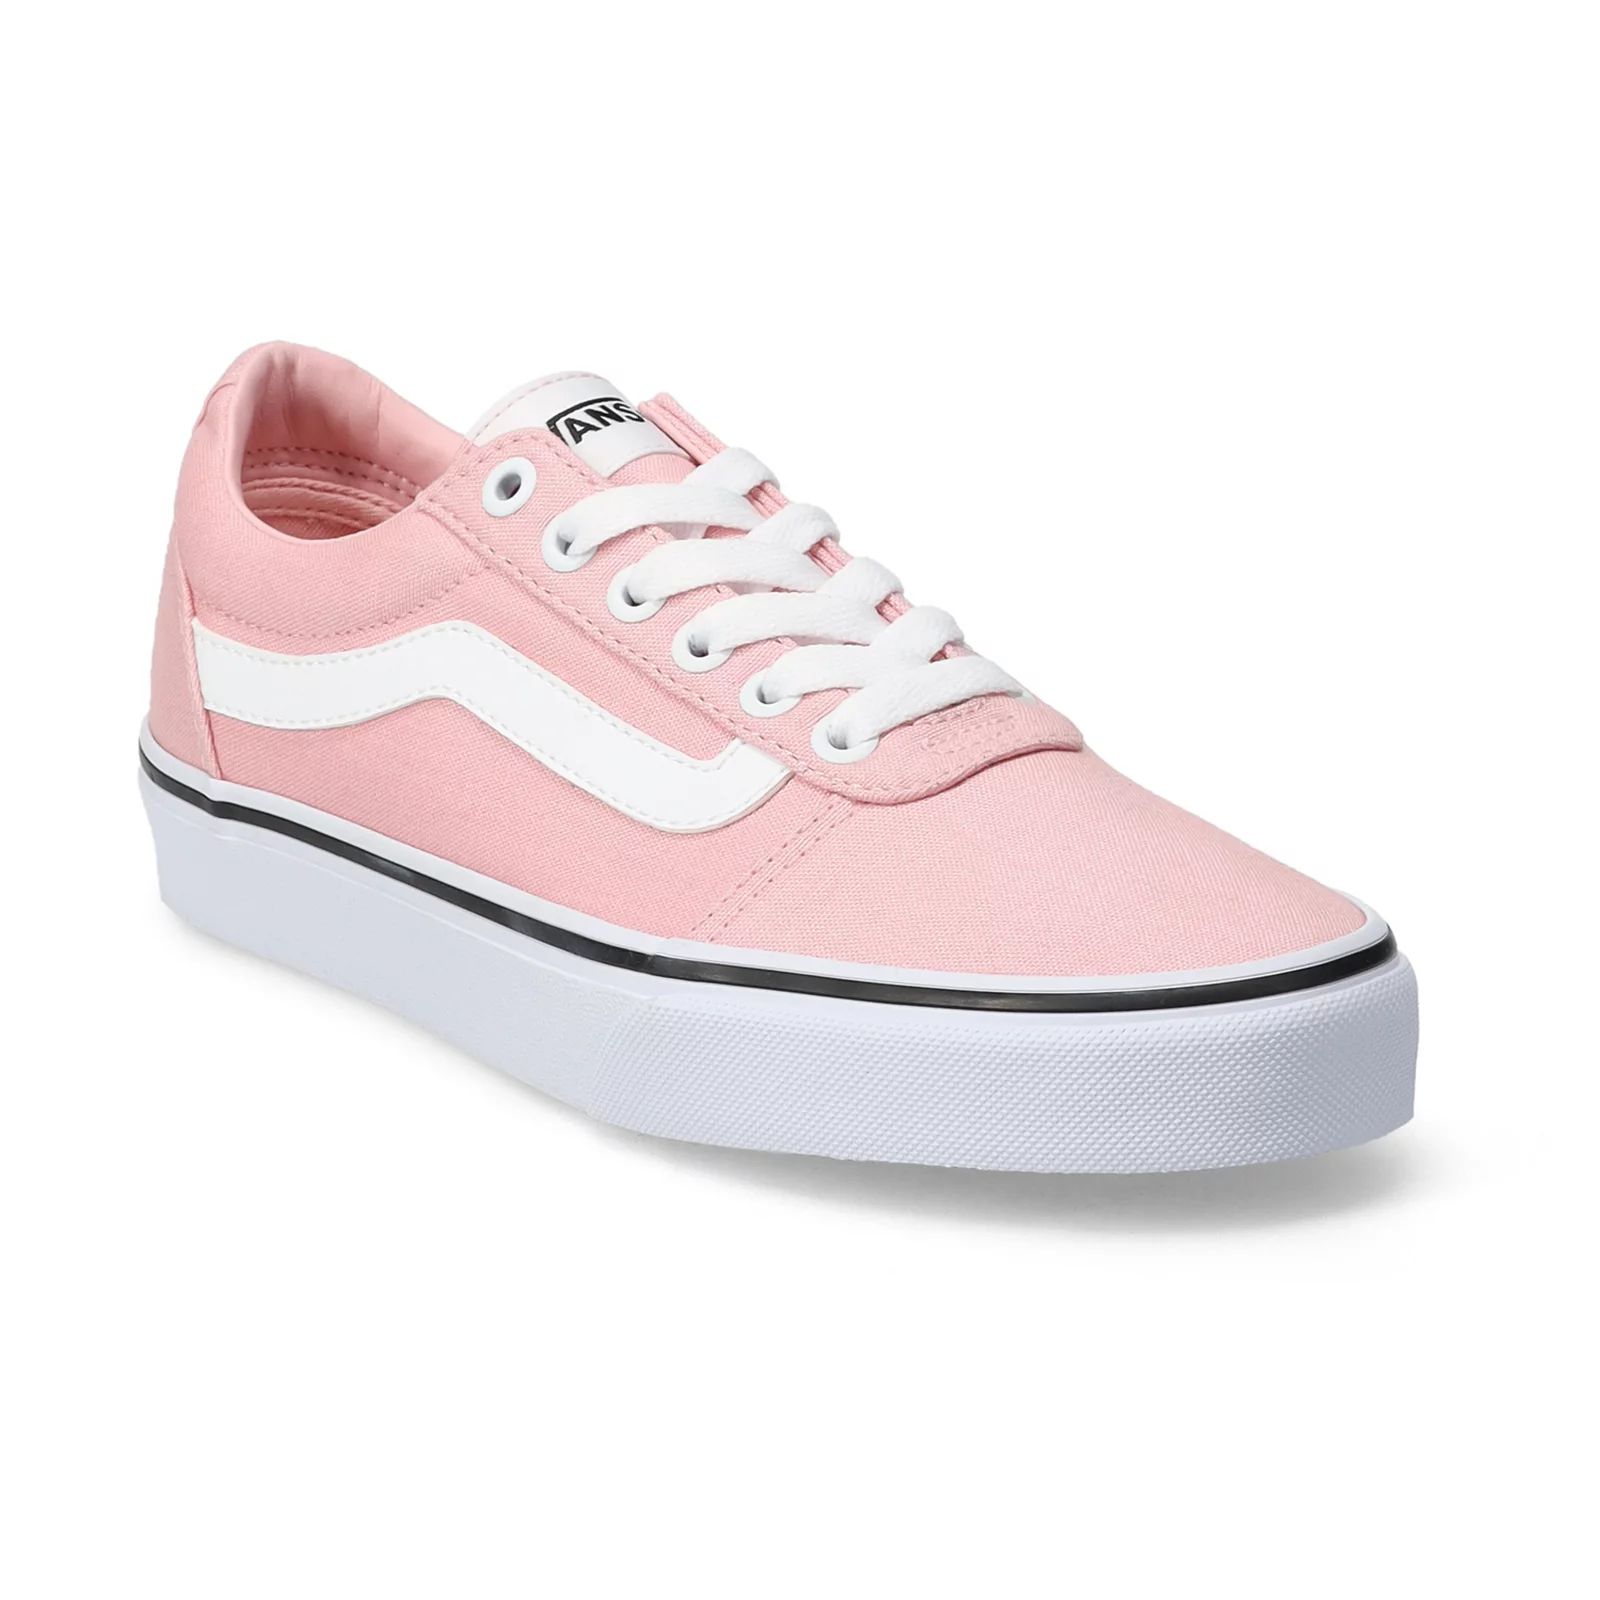 Vans Ward Women's Skate Shoes, Size: 6.5, Med Pink | Kohl's